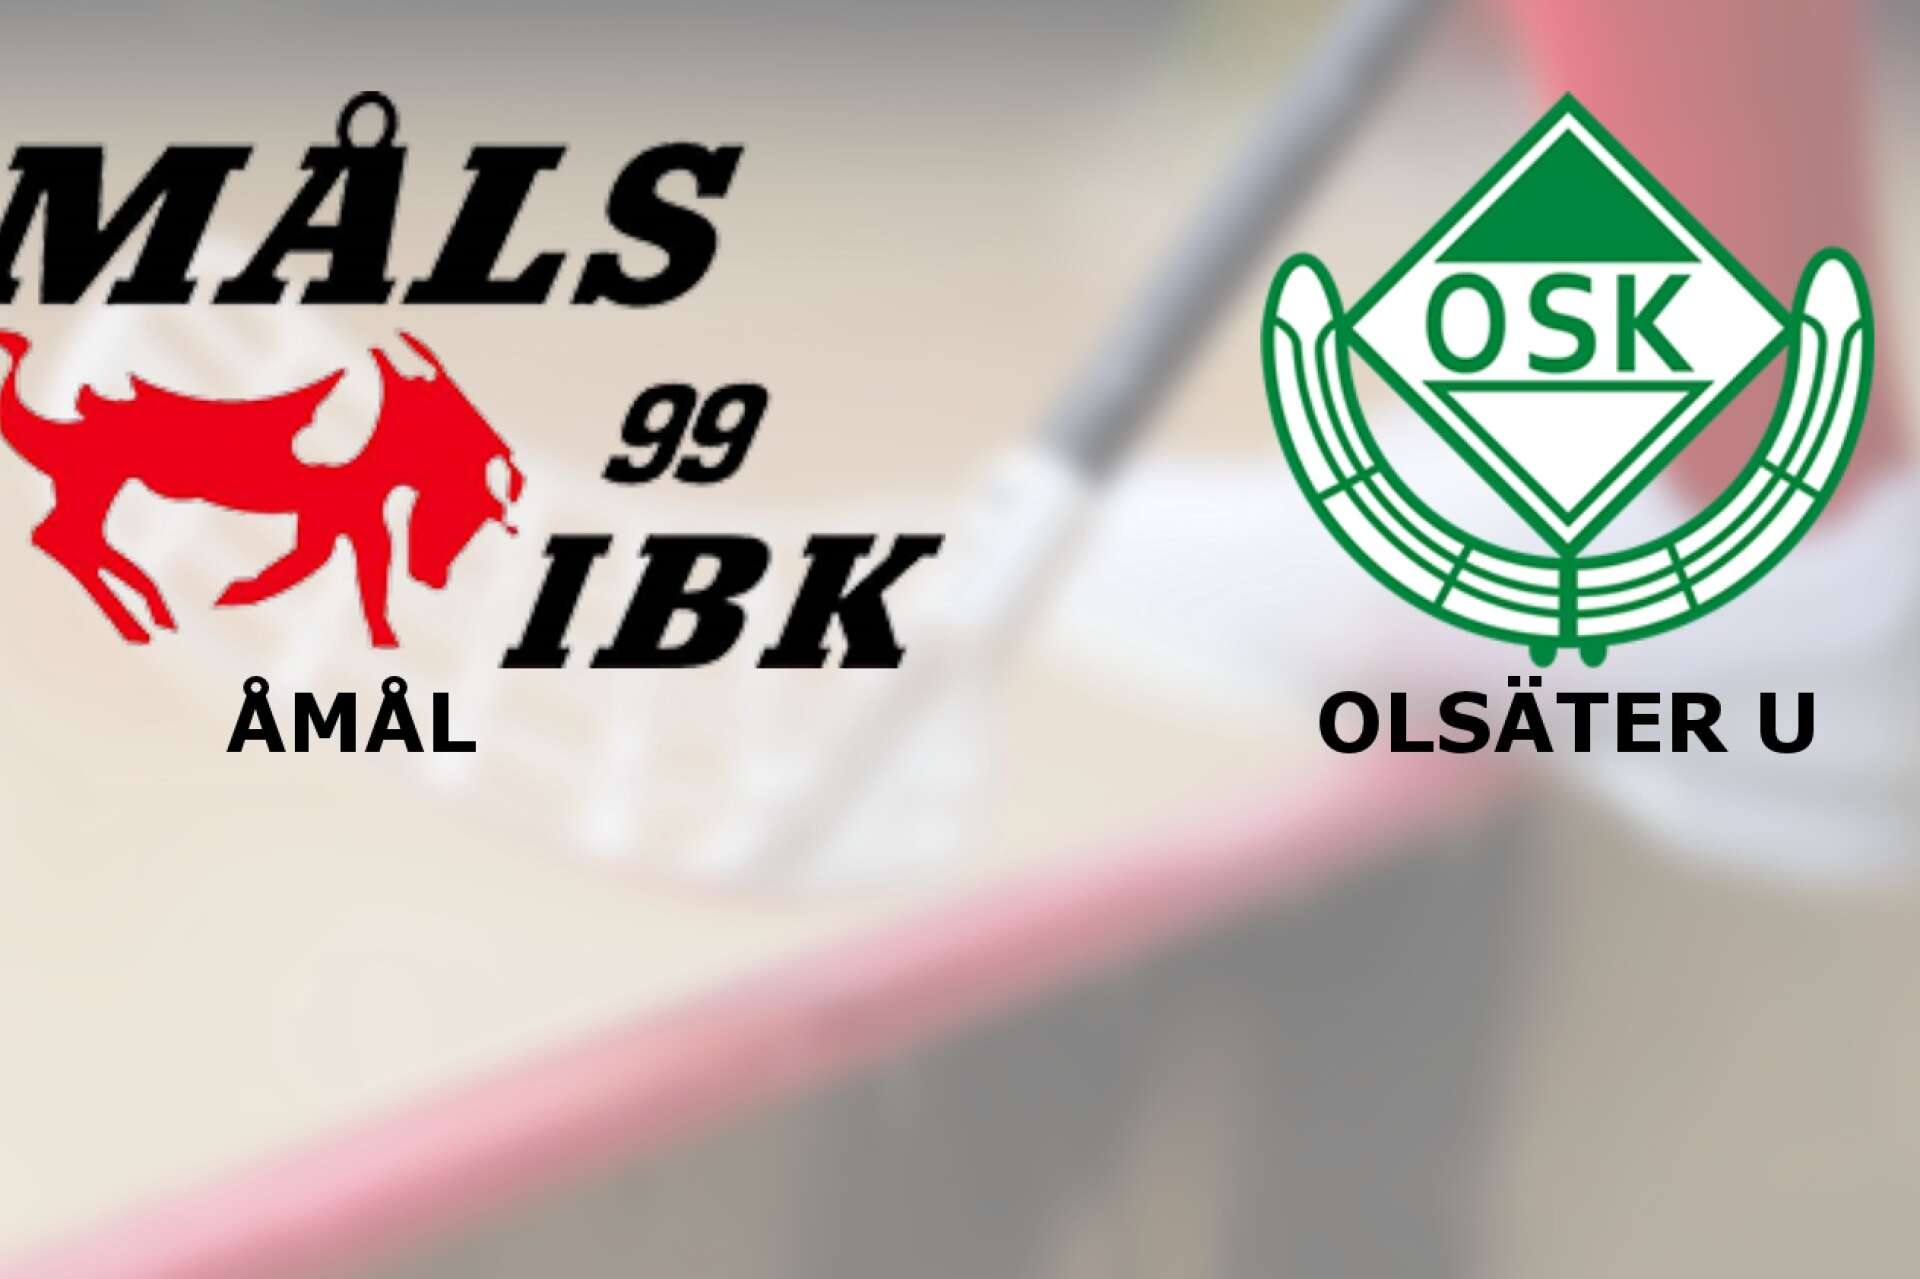 Åmåls IBK vann mot Olsäters SK